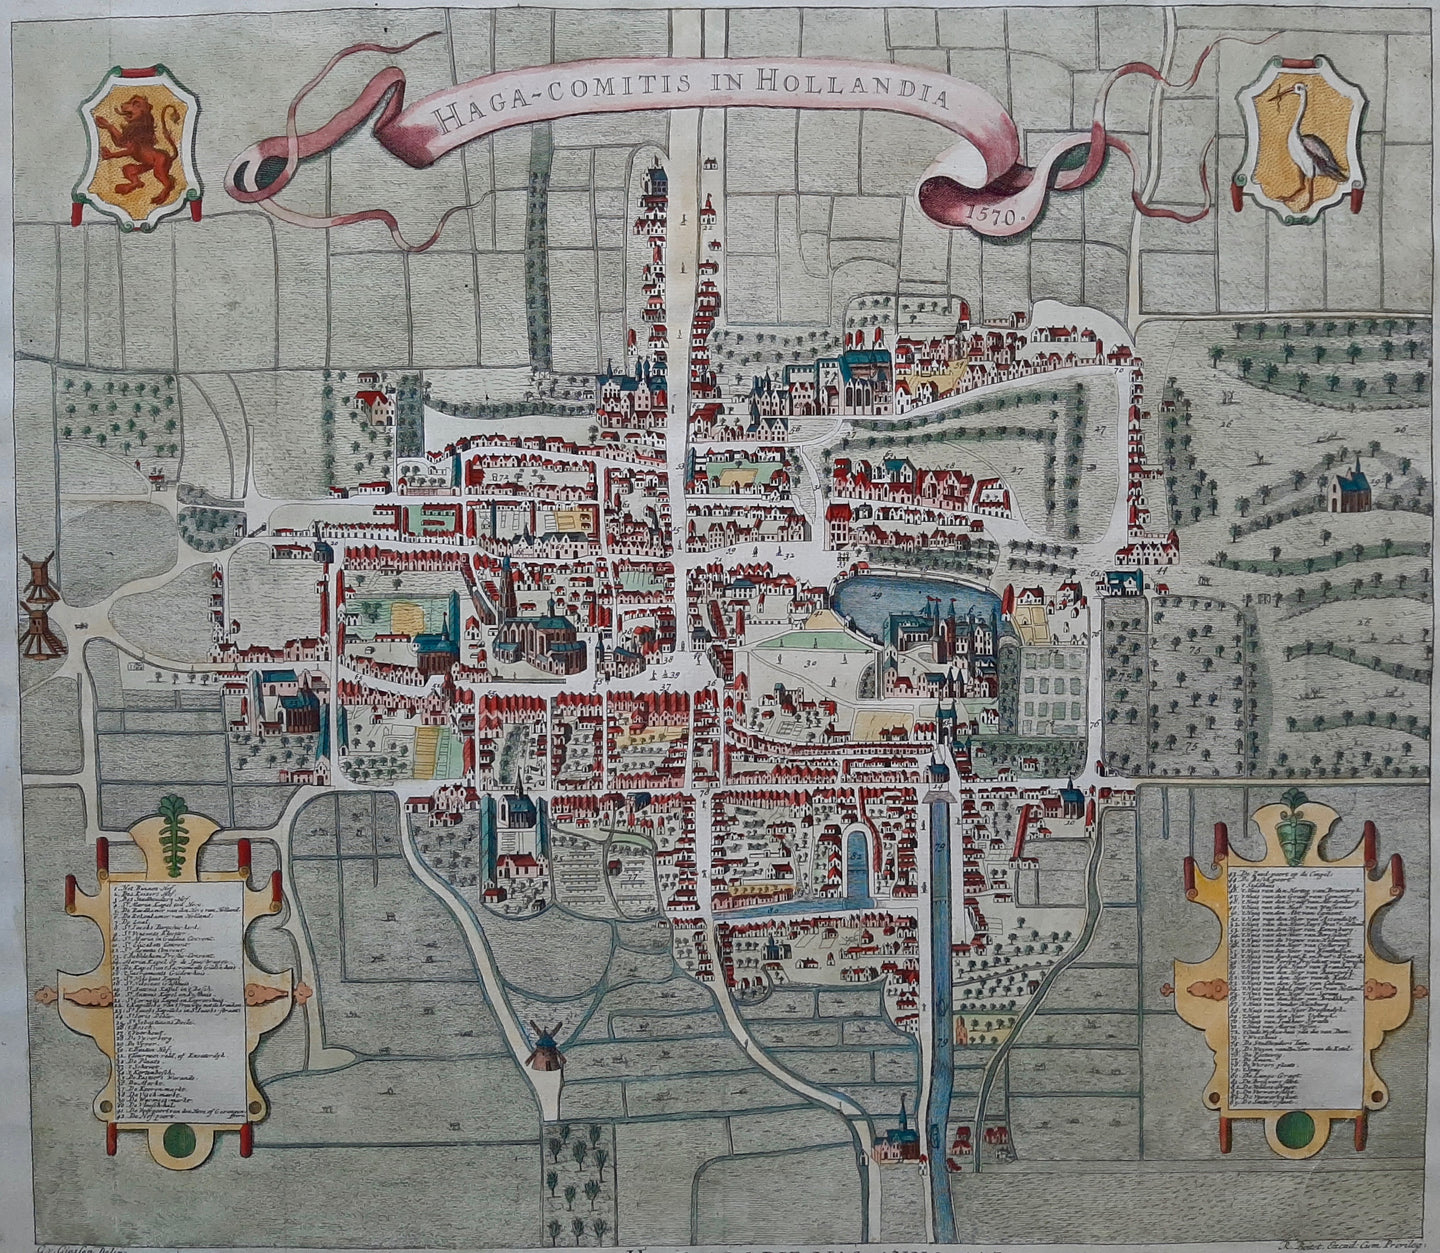 Den Haag Stadsplattegrond van 's Gravenhage in vogelvluchtperspectief - G van Giessen / R Boitet - 1730